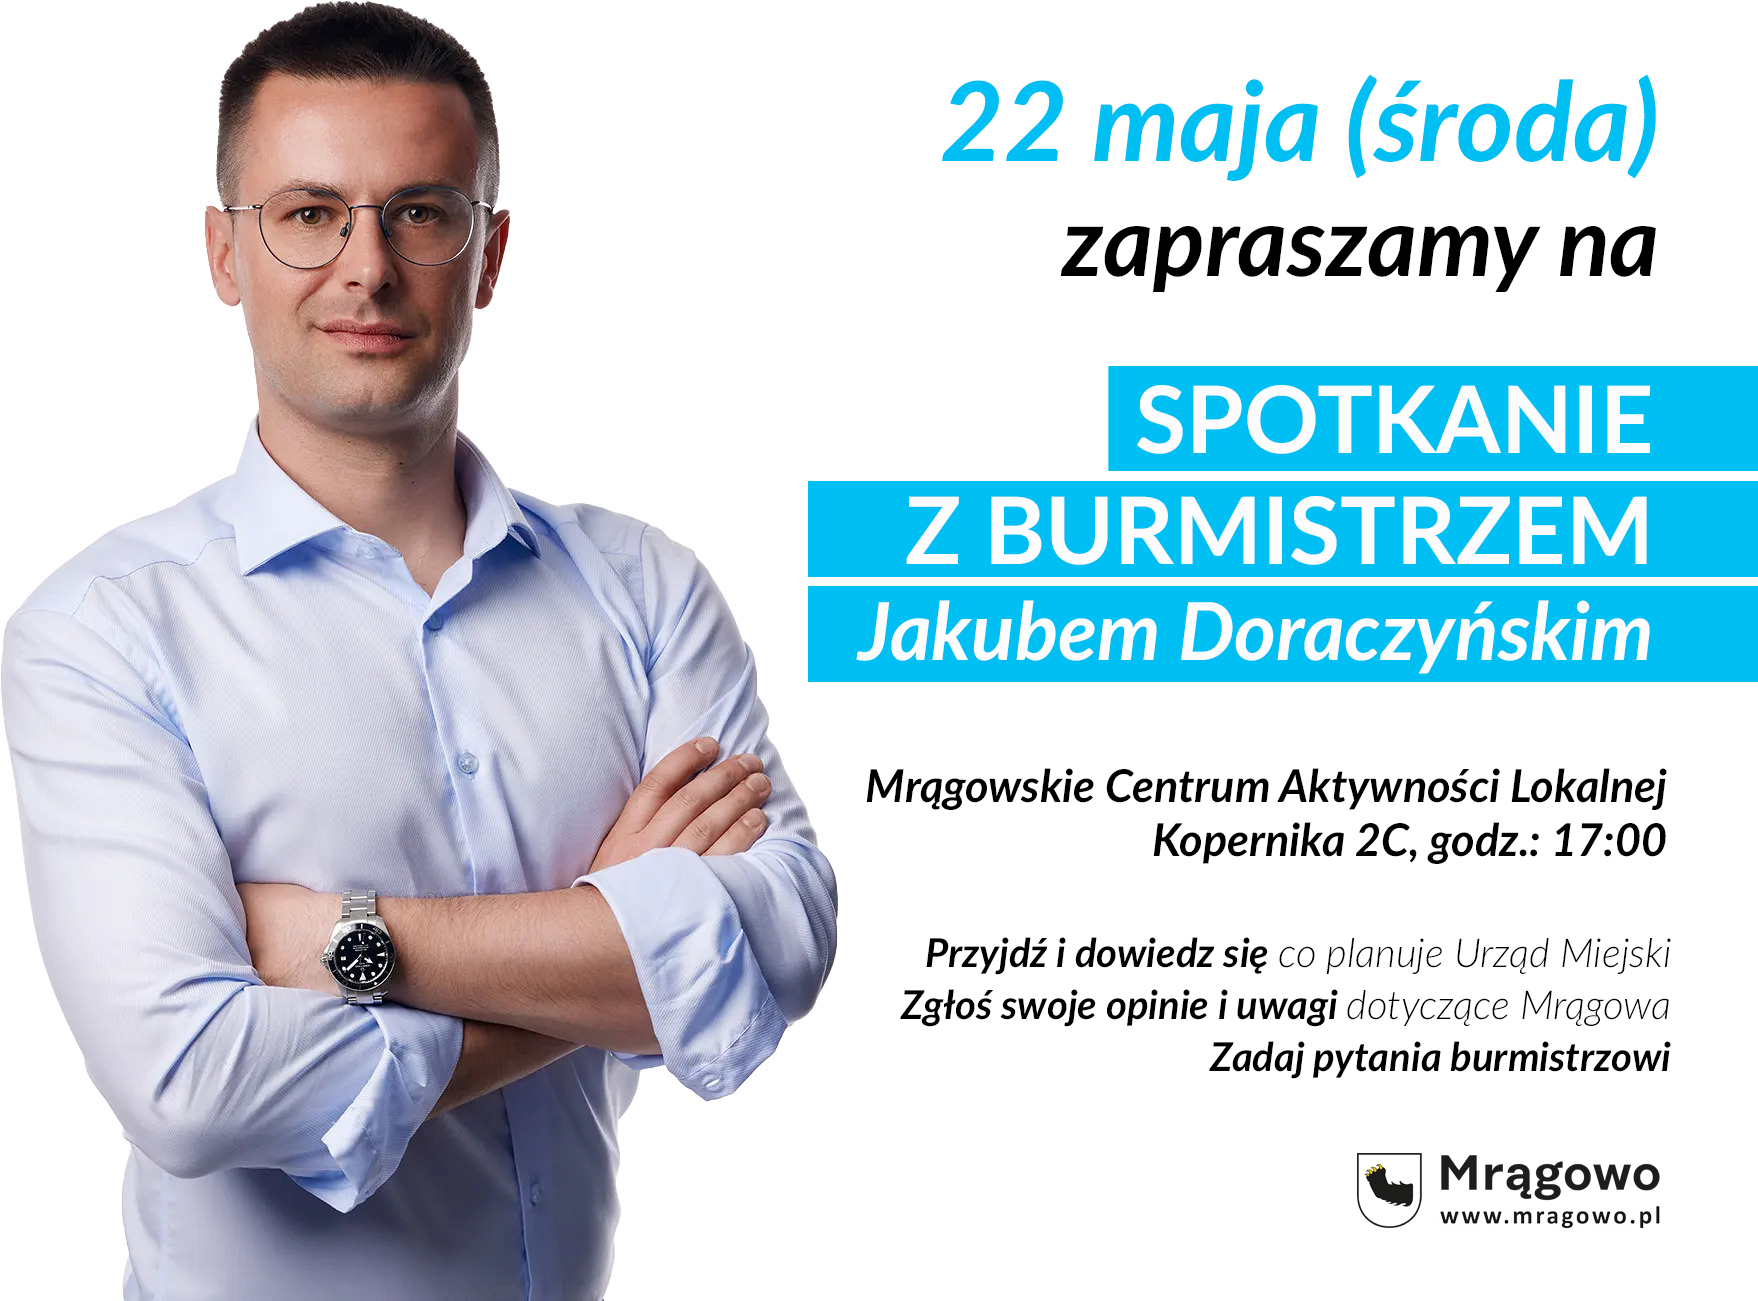 Zapraszamy na spotkanie z burmistrzem Jakubem Doraczyńskim